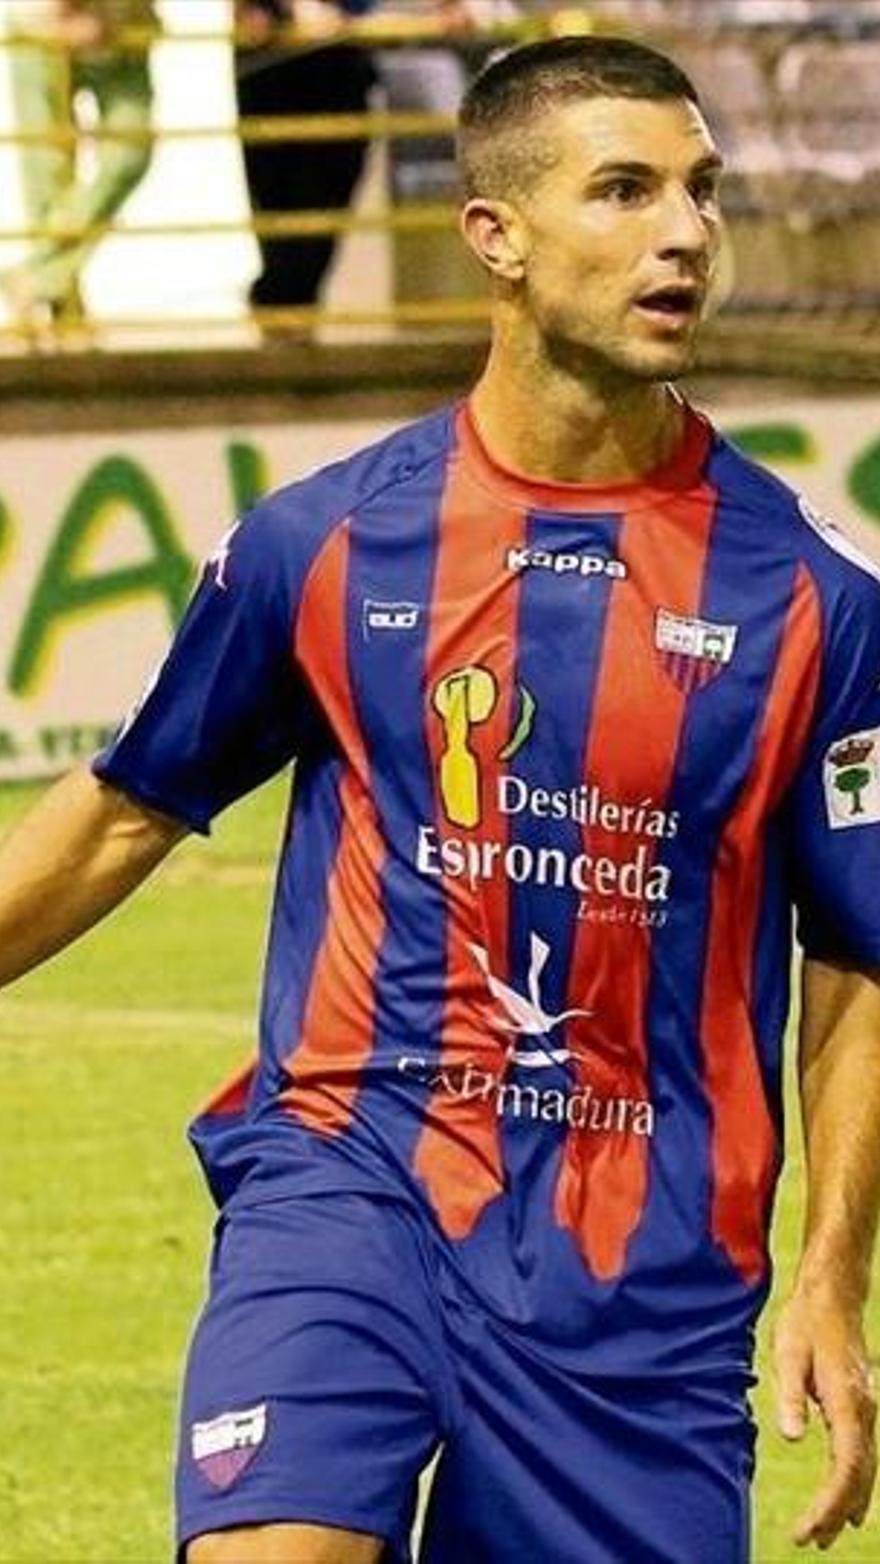 Sube a 15 la nómina de jugadores extremeños con el sello 'LFP' - El  Periódico Extremadura